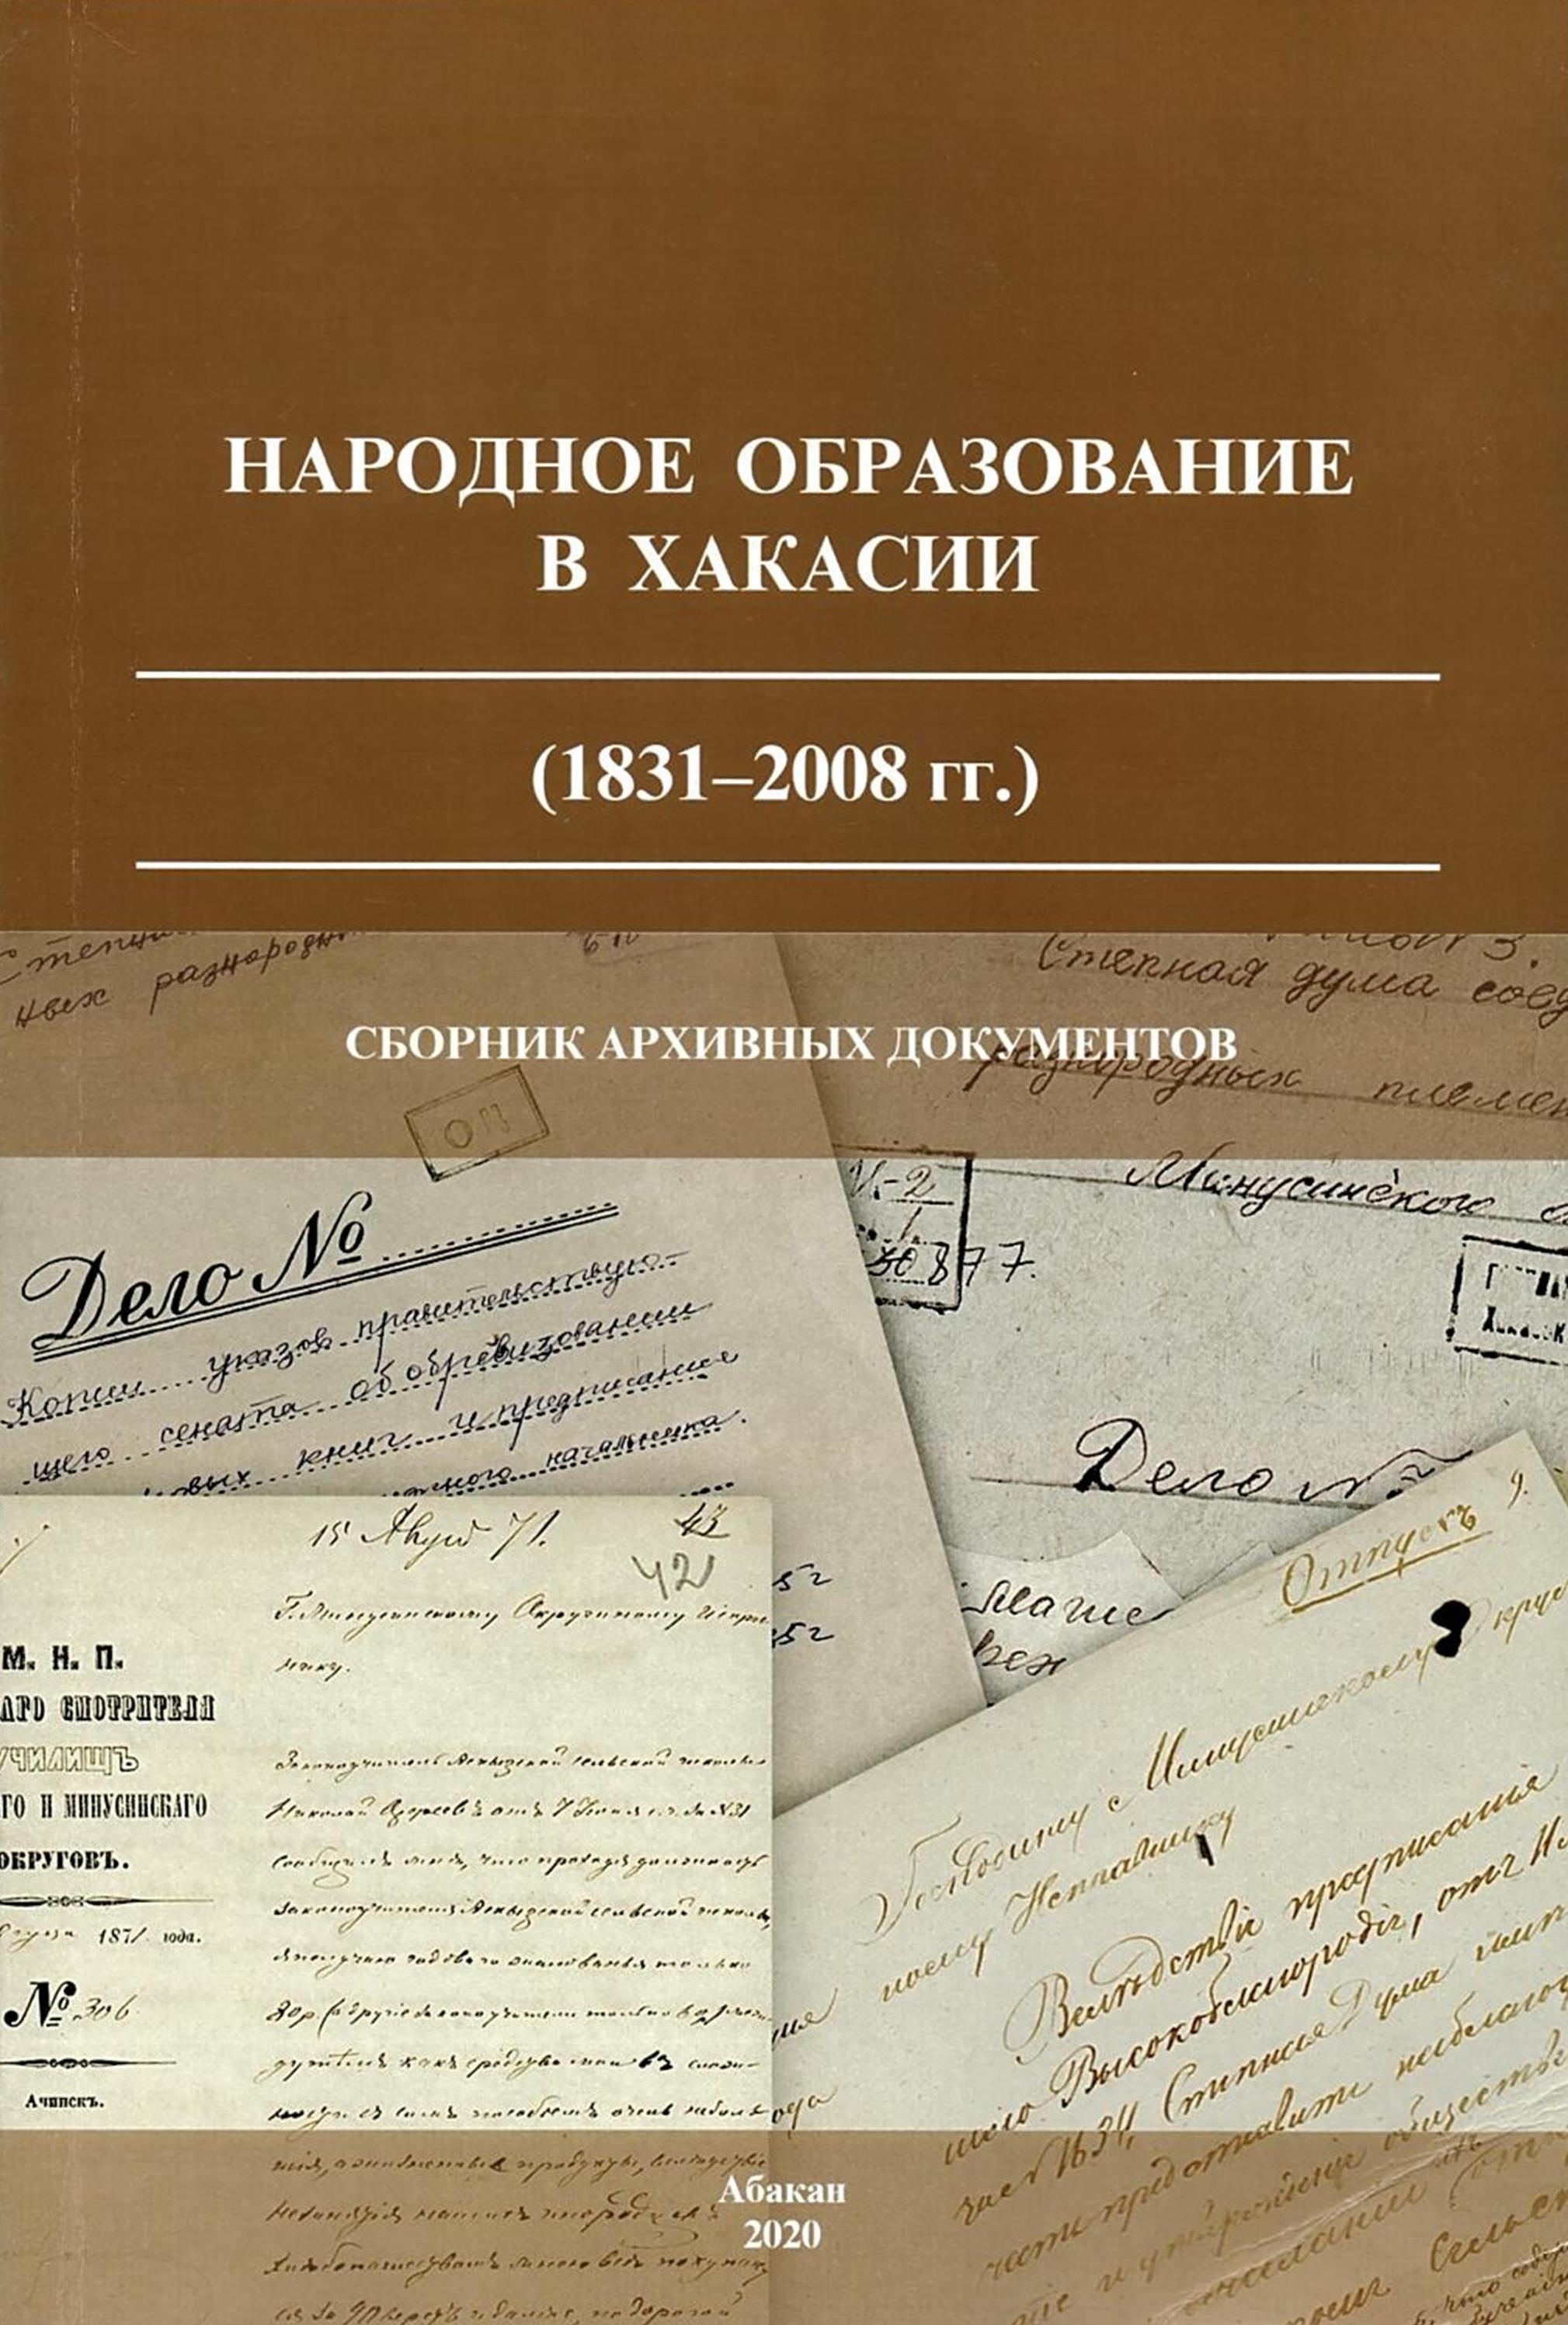 Сборник архивных документов "Народное образование в Хакасии (1831-2008 гг.)"